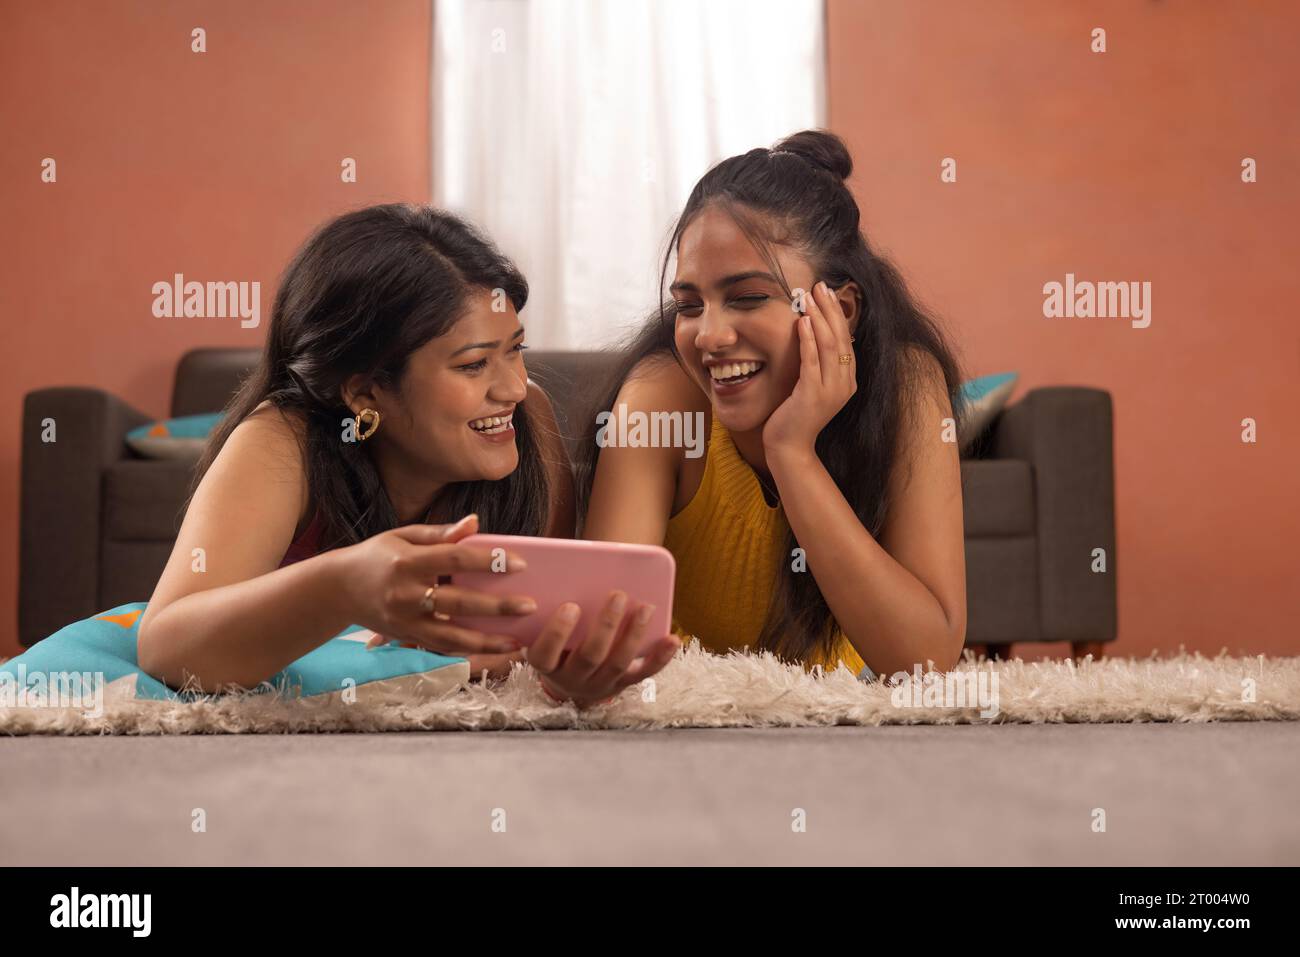 Zwei lächelnde Frauen sehen gemeinsam Videos auf dem Mobiltelefon, während sie im Wohnzimmer auf dem Boden liegen Stockfoto